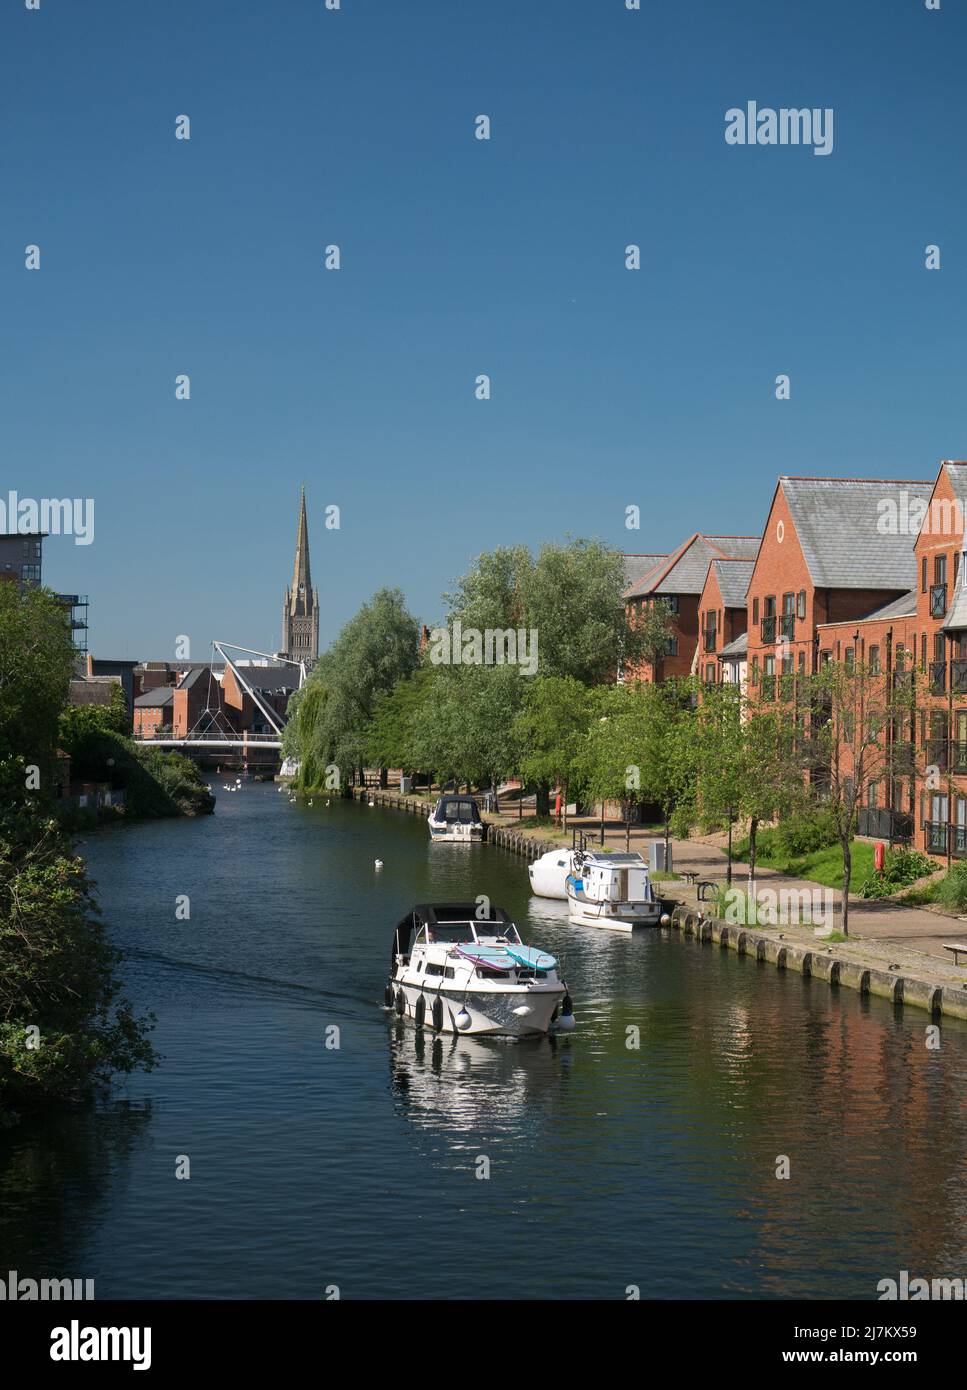 Der Fluss Wensum in der Stadt Norwich, Teil der Norfolk Broads, mit Neuentwicklung & Cathedral Spire, Norwich, Norfolk, England, Großbritannien Stockfoto